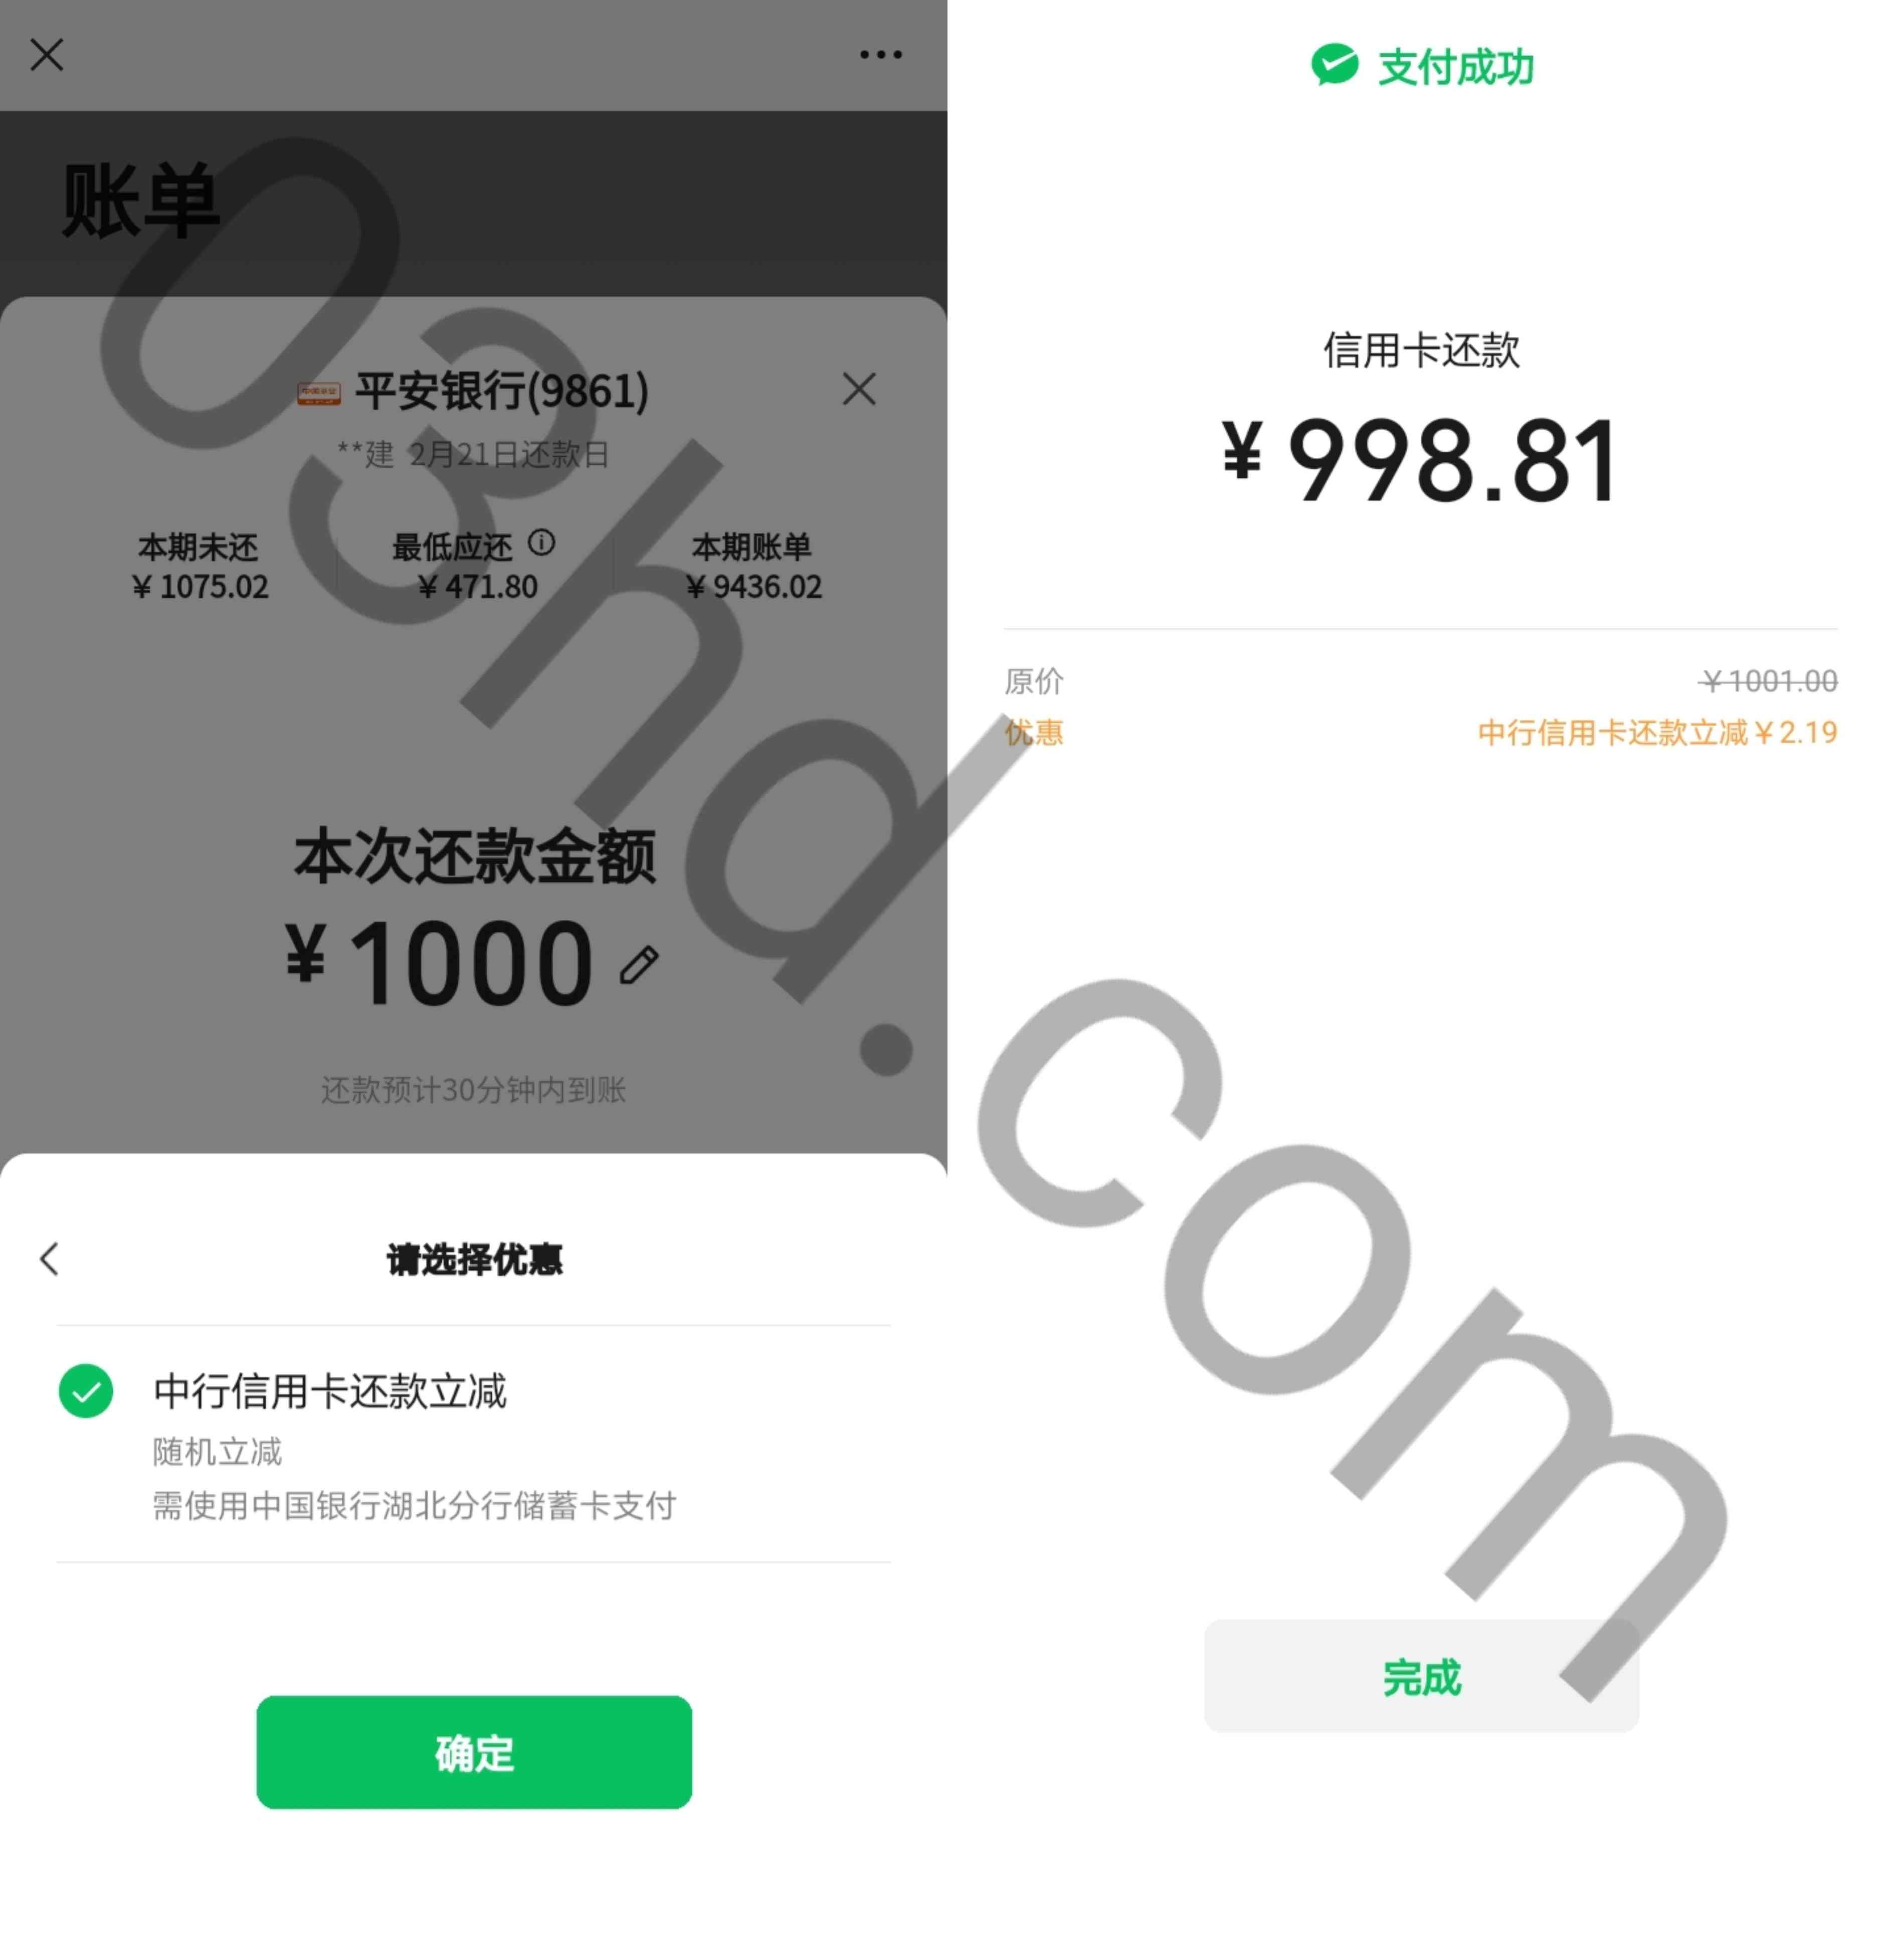 微信信用卡还款使用中国银行湖北分行储蓄卡支付满一千随机立减2～99元